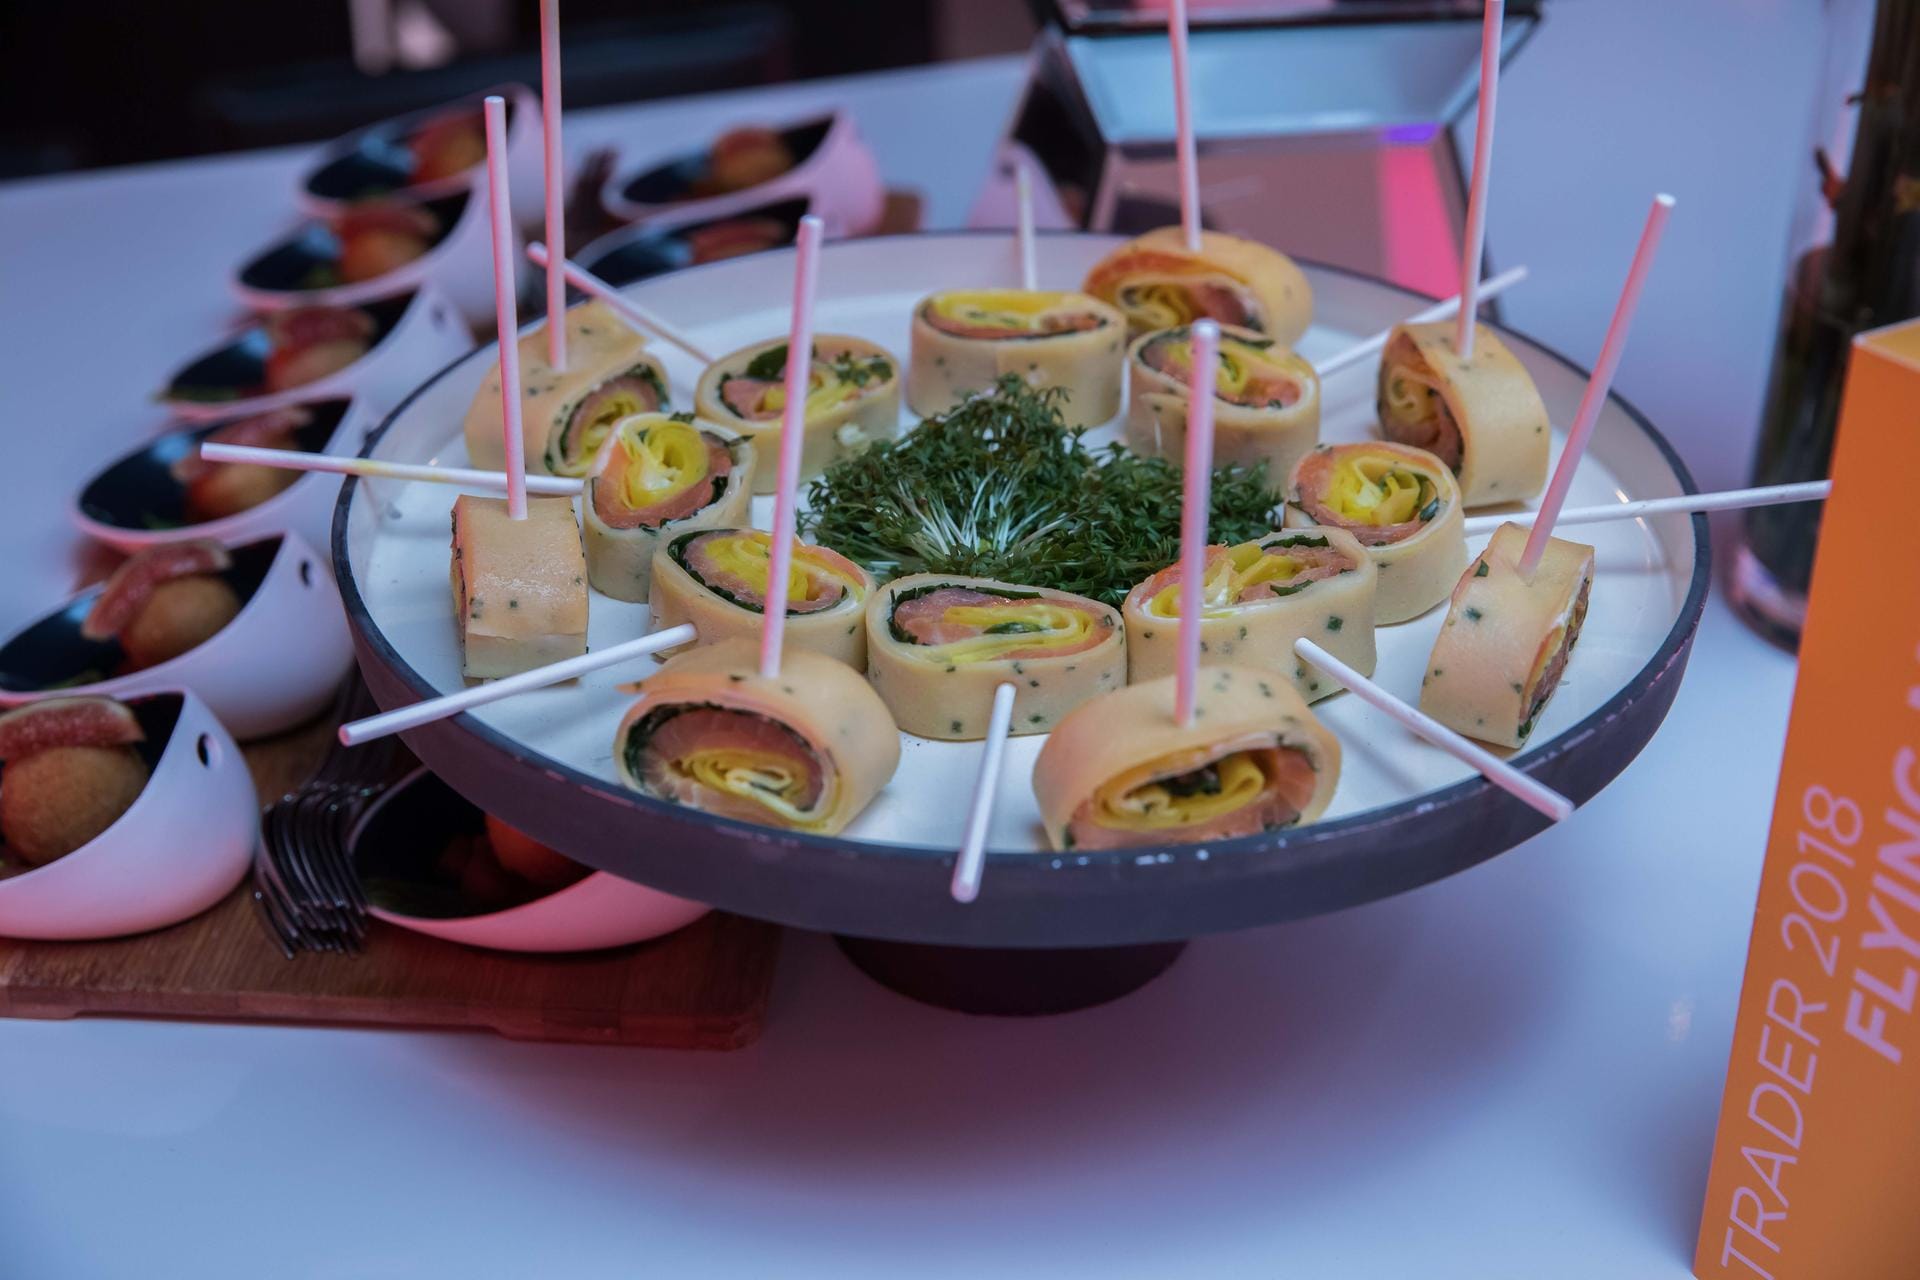 Flying Buffet: Kleine Köstlichkeiten auf Spießchen für den kleinen Hunger der Gäste während der Preisverleihung.